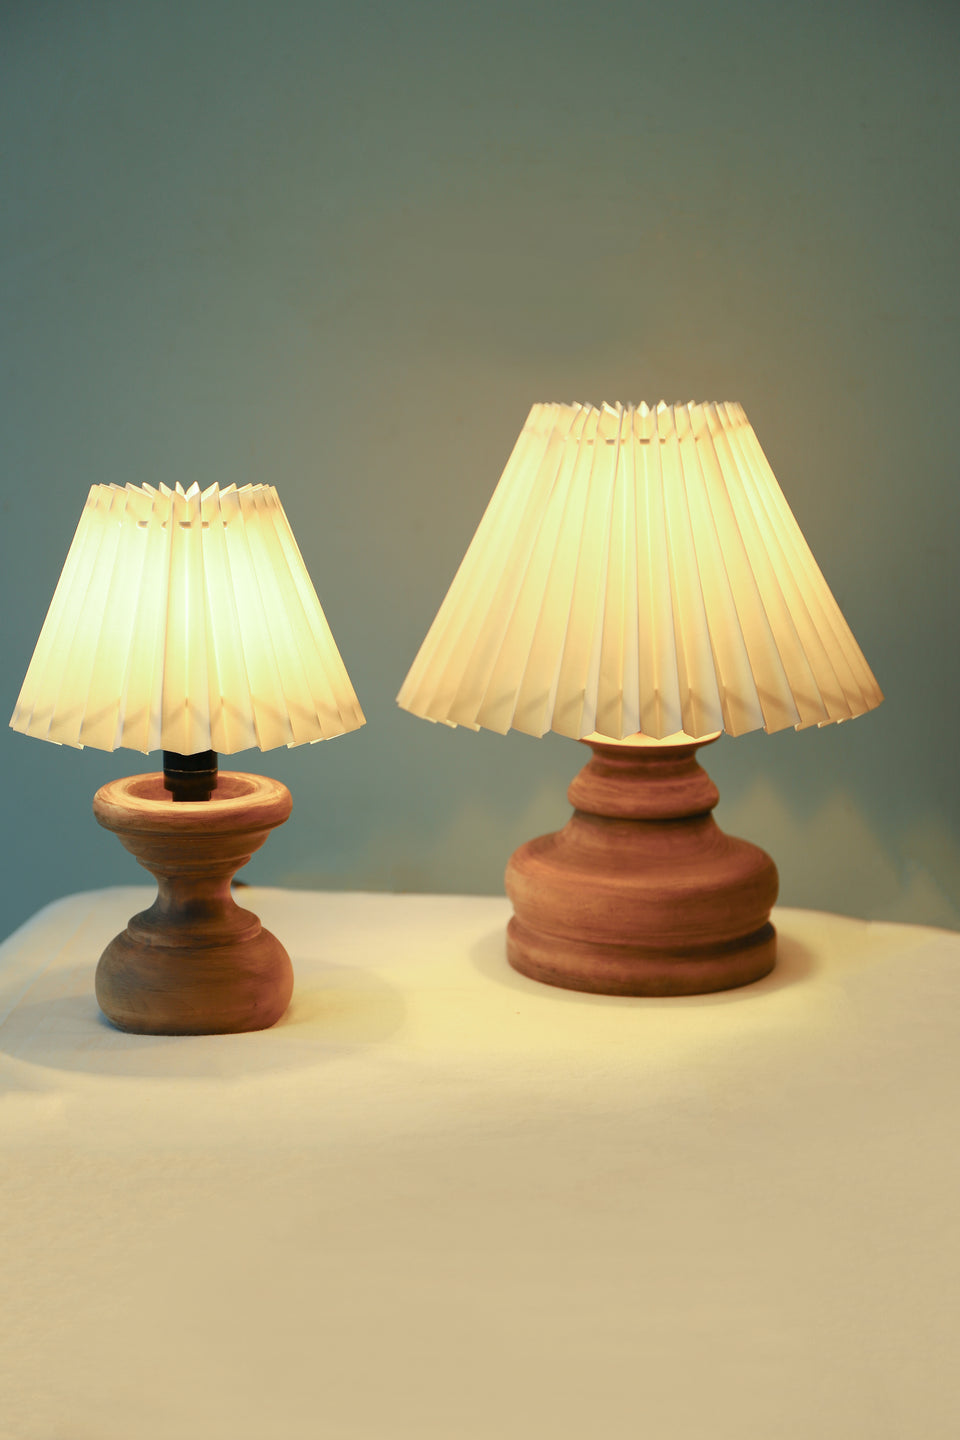 Shabby Chic Style Wooden Table Lamp/木製テーブルランプ シャビーシック ナチュラル 照明